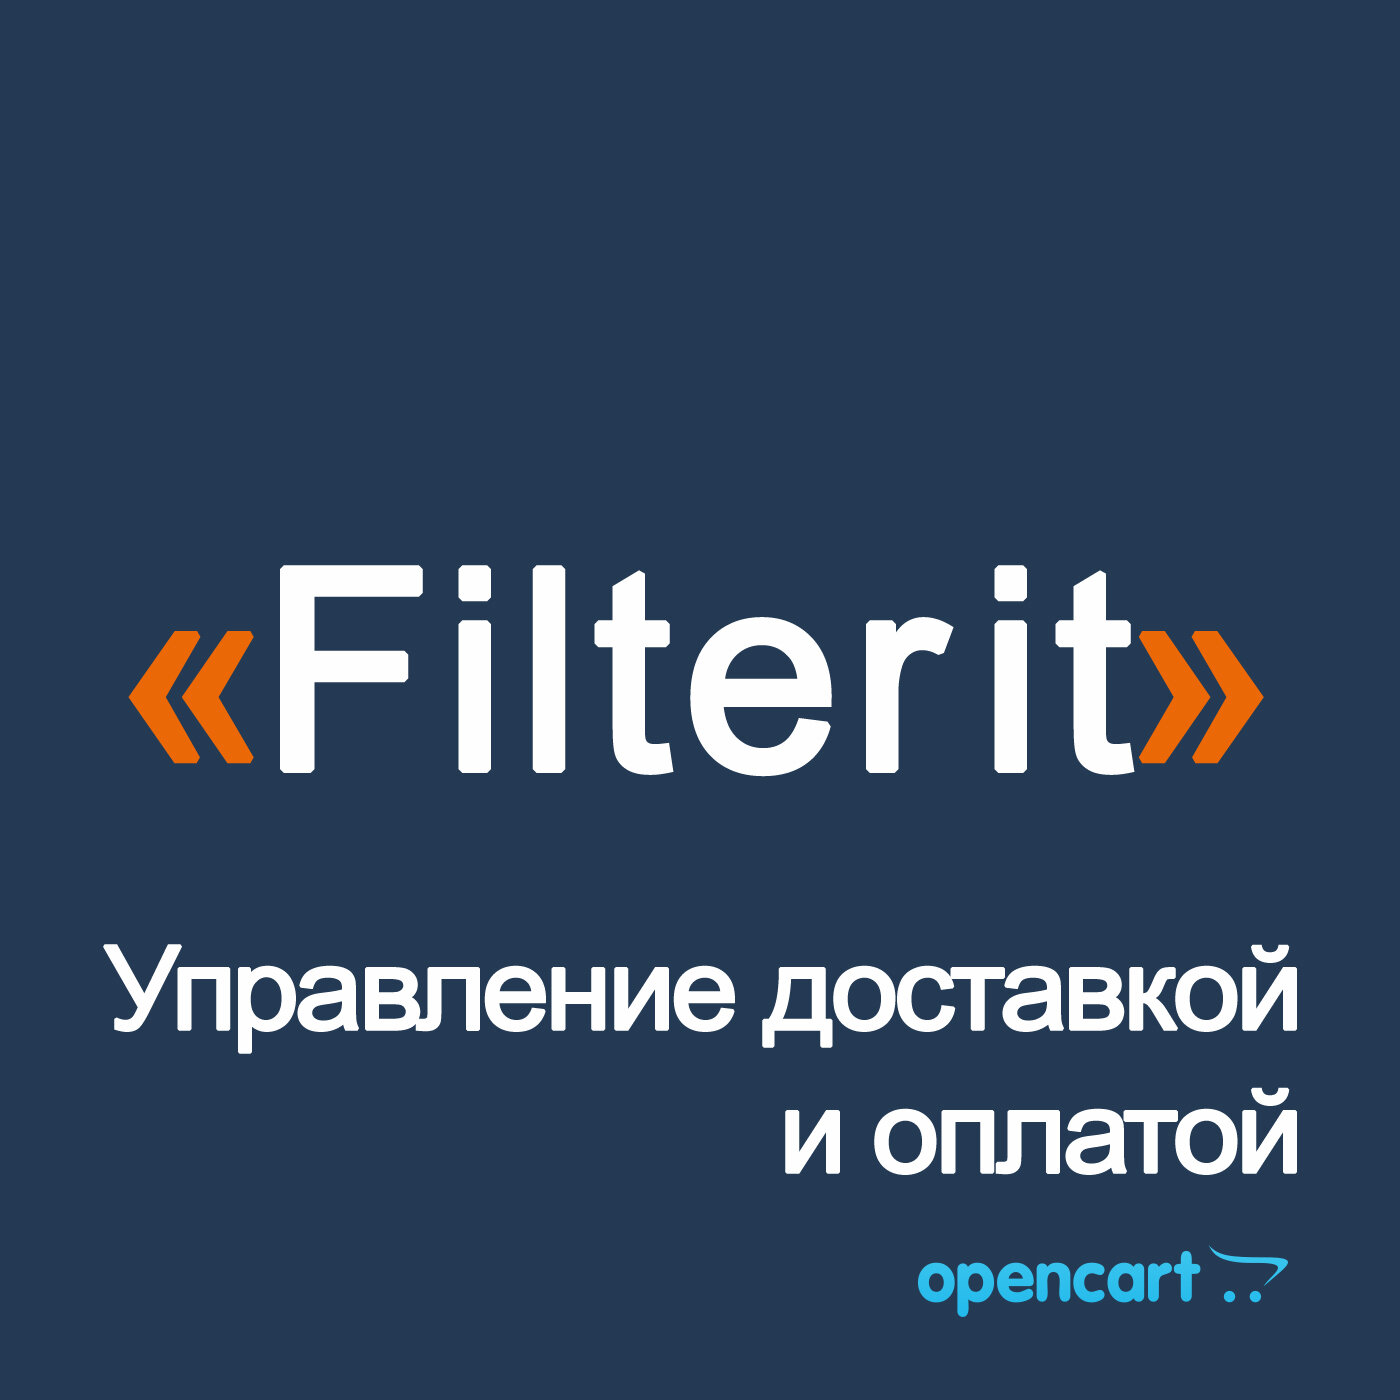 Filterit - Управление доставкой, оплатой и учетом в заказе